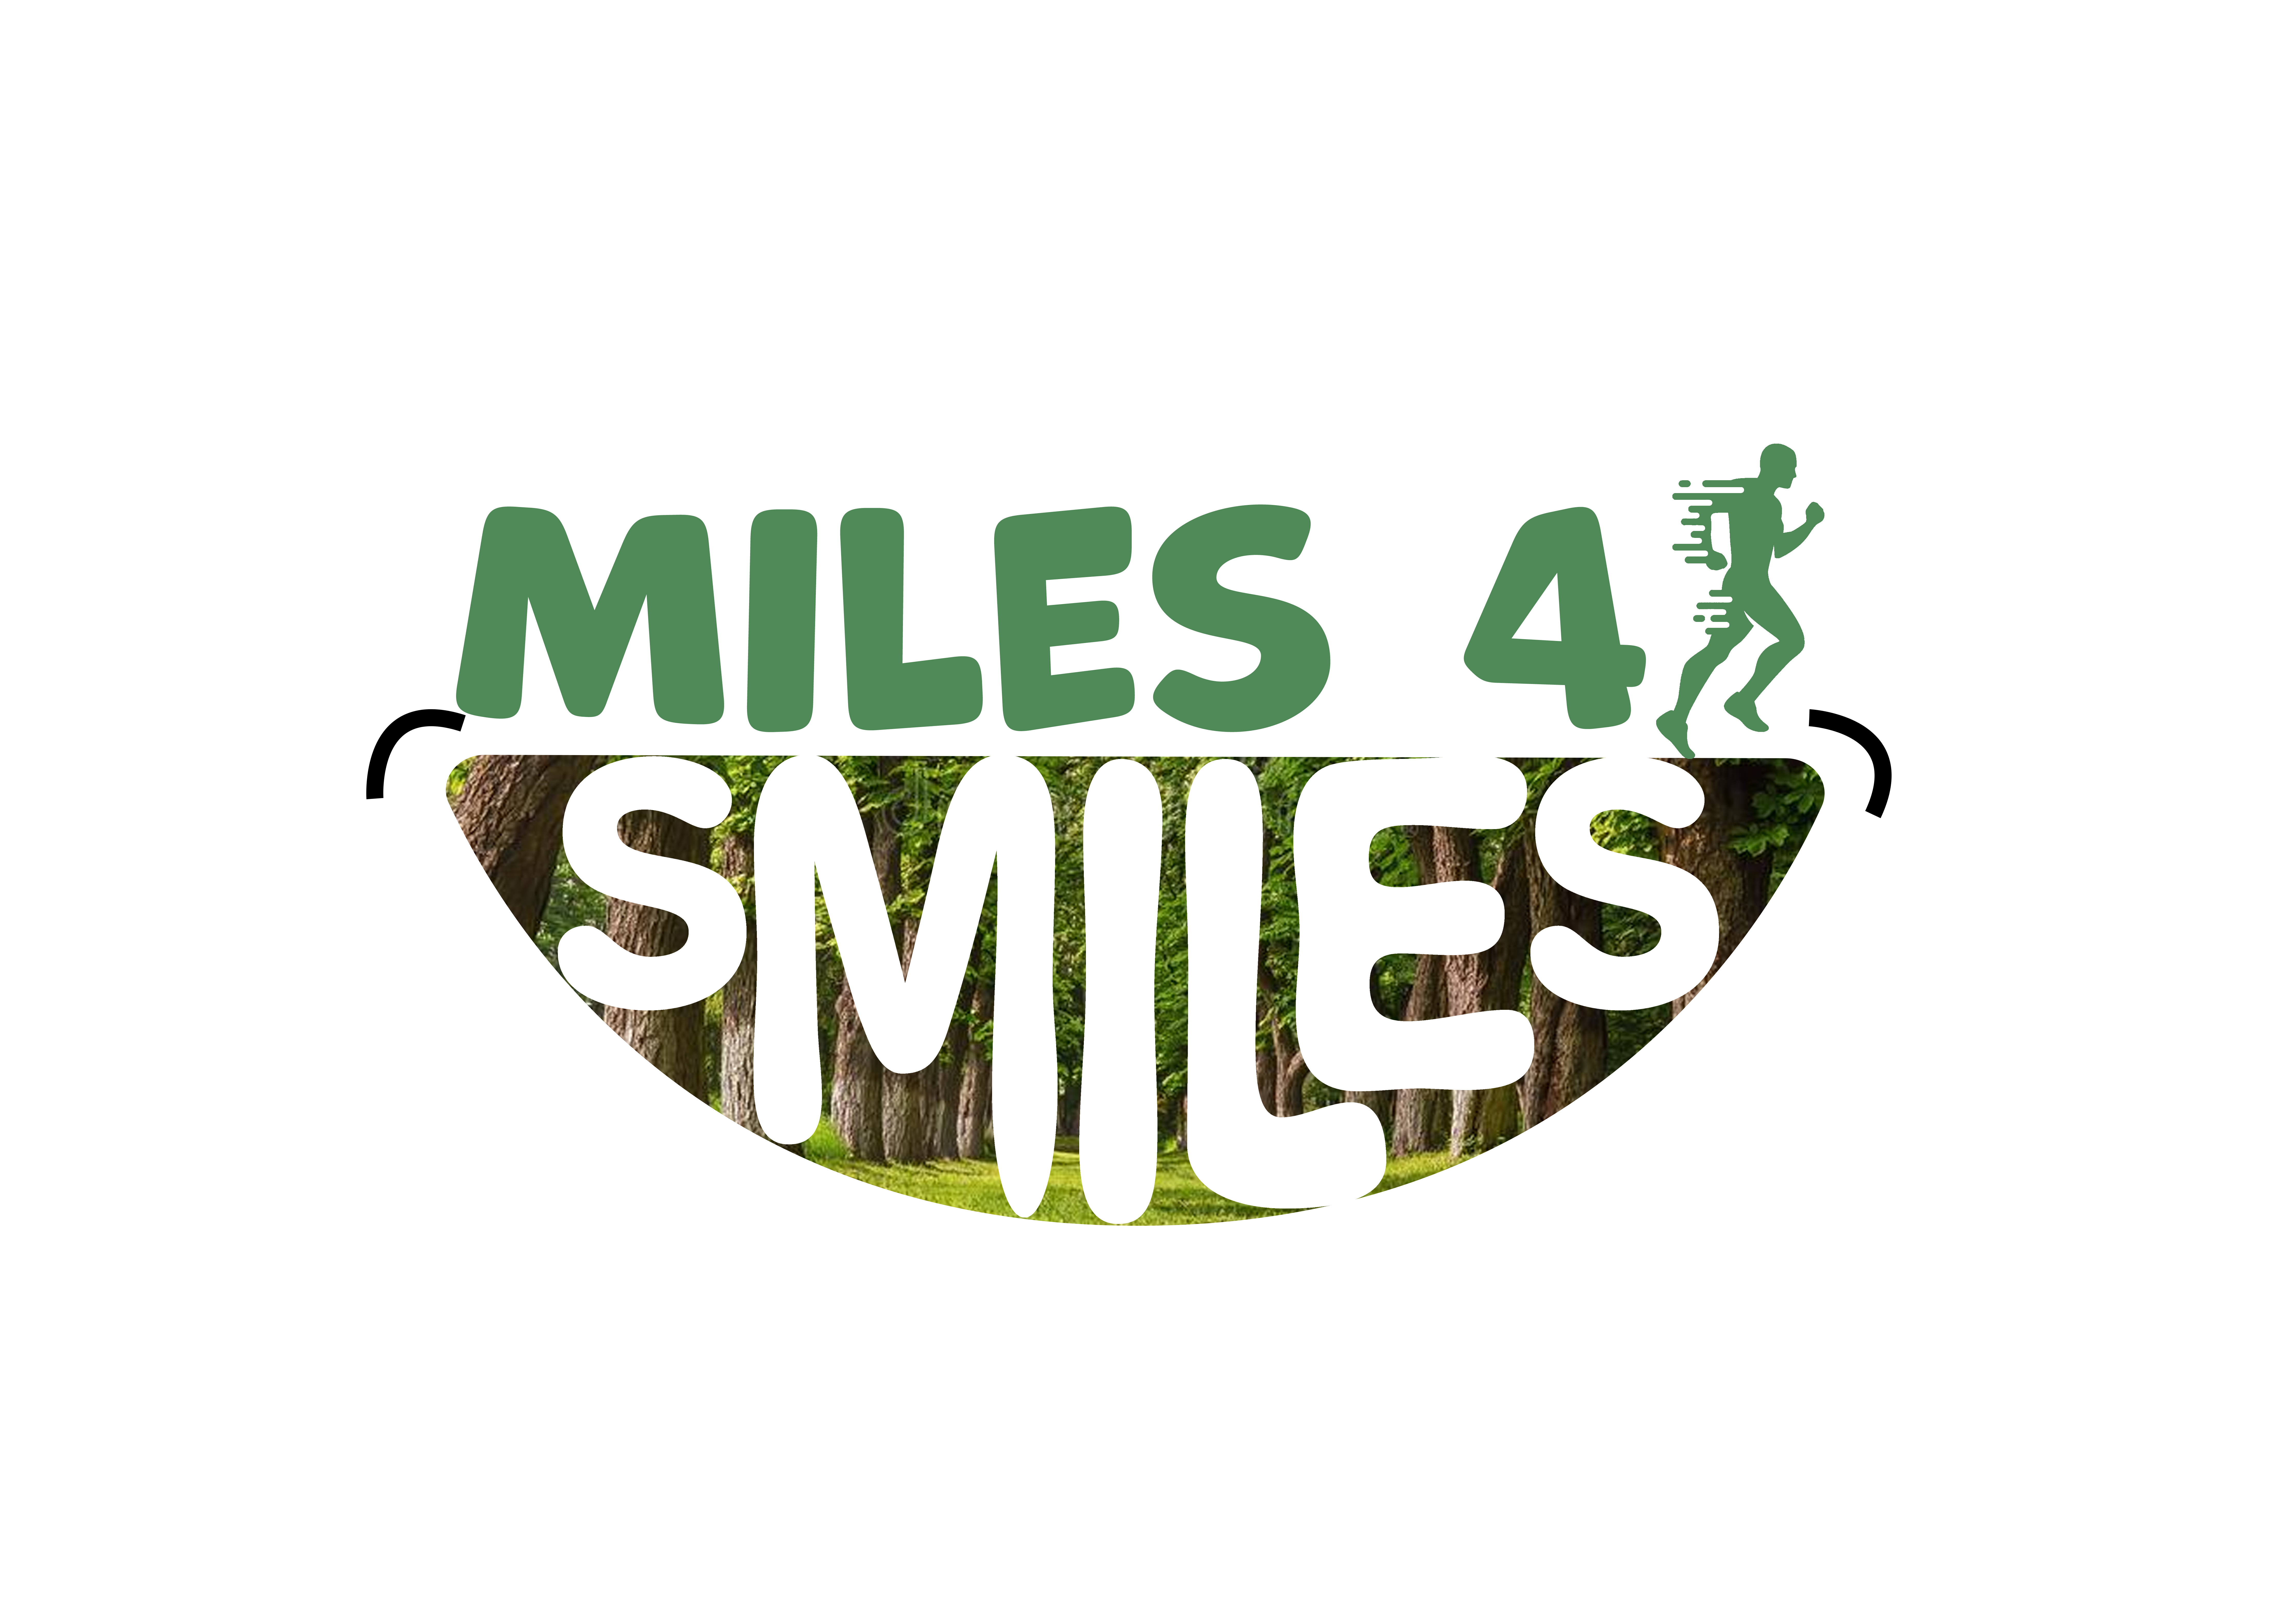 RPL's 'Miles 4 Smiles' logo